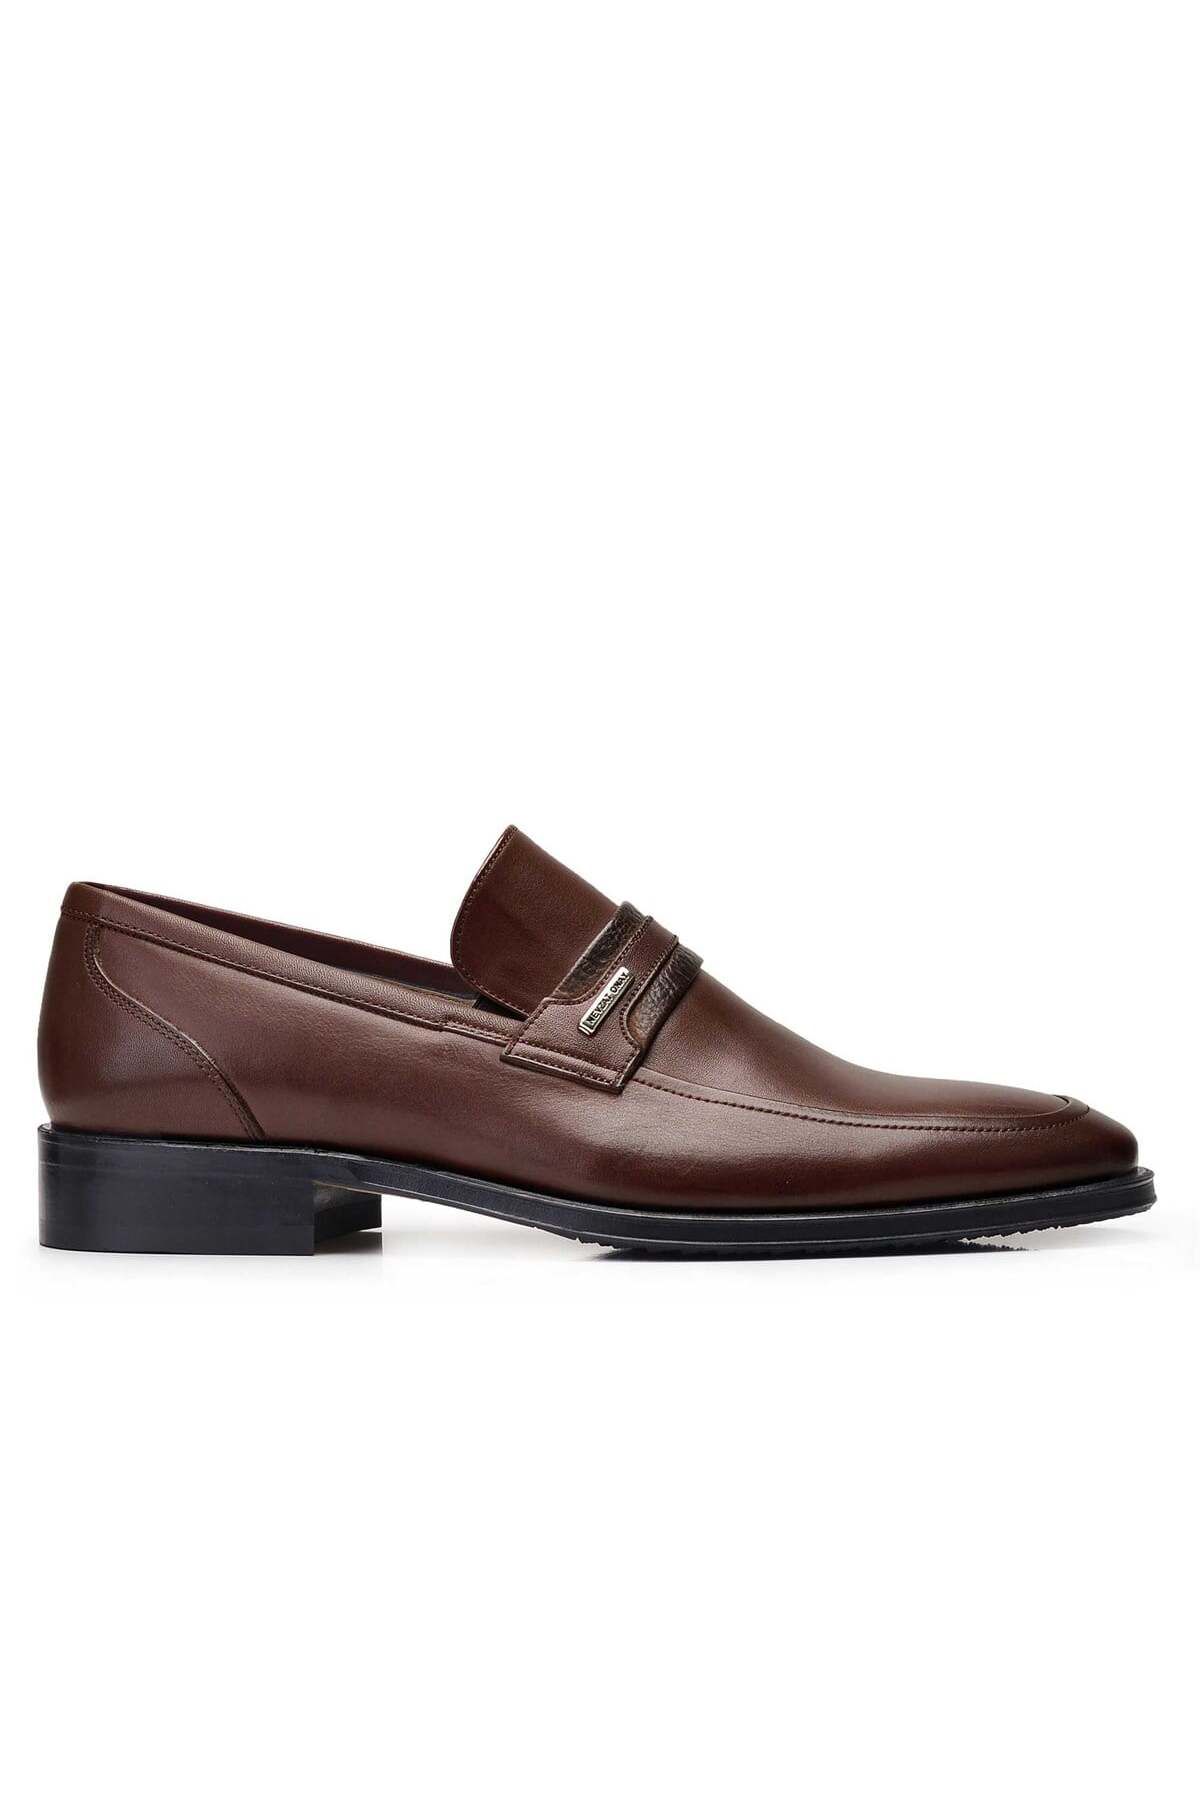 Nevzat Onay Kahverengi Klasik Loafer Erkek Ayakkabı -10452-